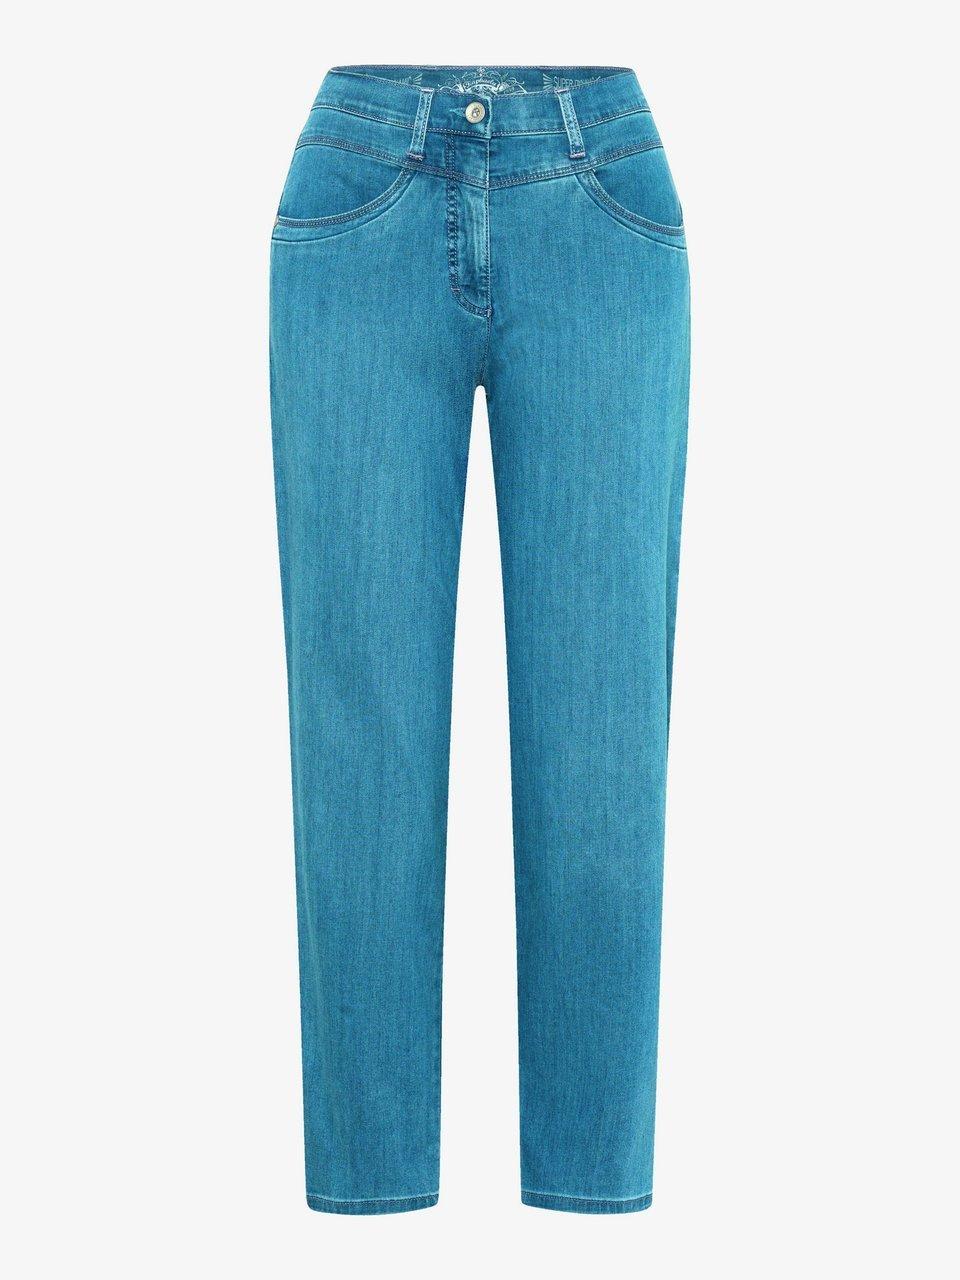 Enkellange ProForm S Super Slim-jeans Van Raphaela by Brax denim